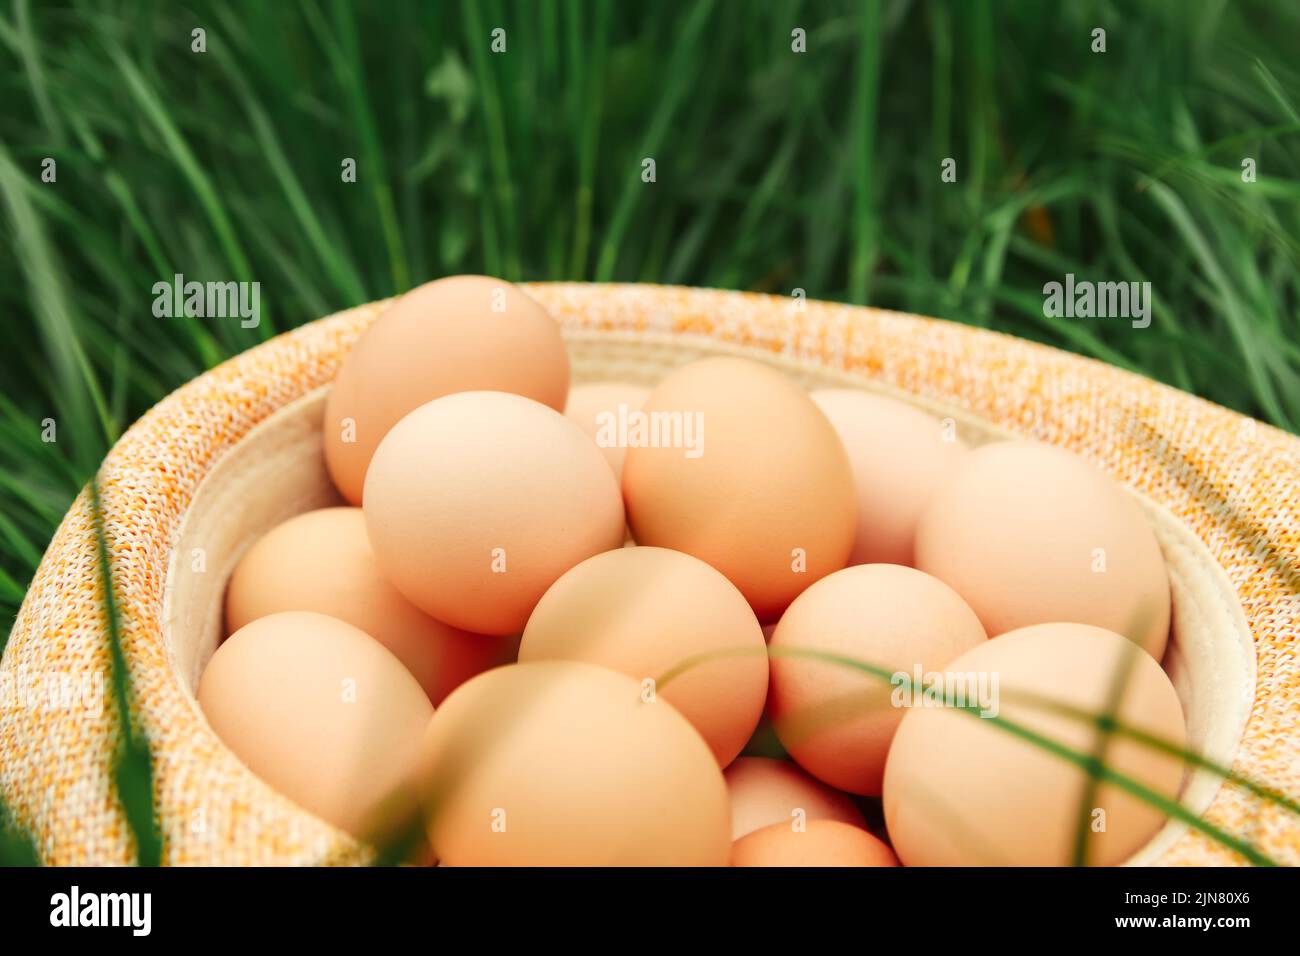 Unschärfe-Eier in Strohhut auf Gras Hintergrund. Hühnereier im Holzkorb auf grünem Naturboden bei bewölktem Tag. Speicherplatz kopieren. Bio-Lebensmittel. Nahaufnahme. E Stockfoto